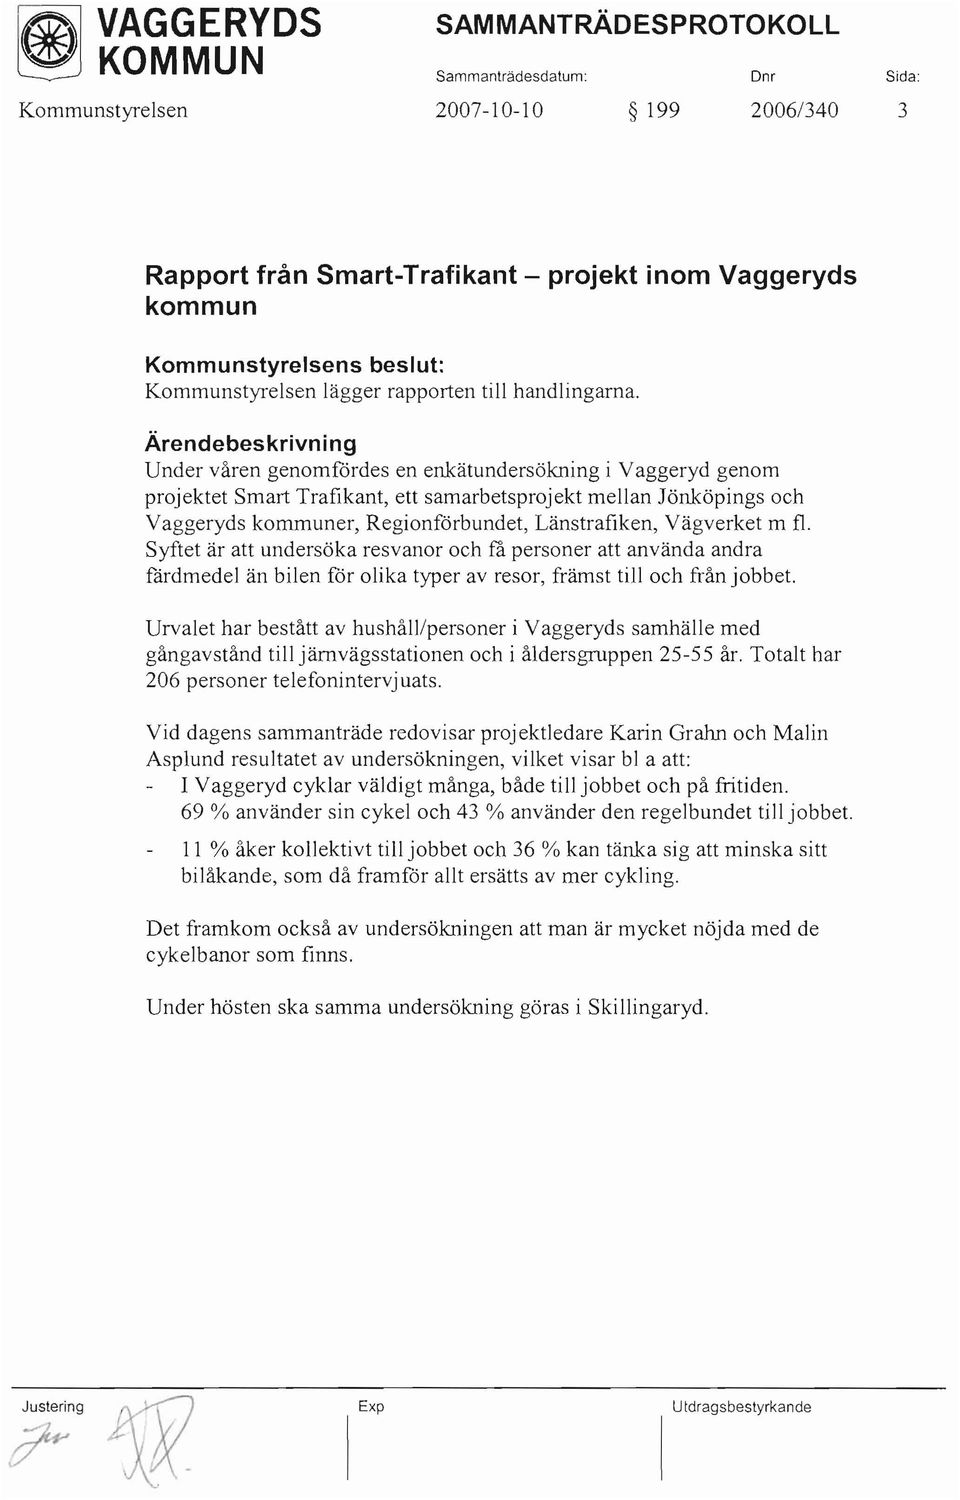 Ärendebeskrivni ng Under våren genomfördes en enkätundersökning i Vaggeryd genom projektet Smart Trafikant, ett samarbetsprojekt mellan Jönköpings och Vaggeryds kommuner, Regionförbundet,